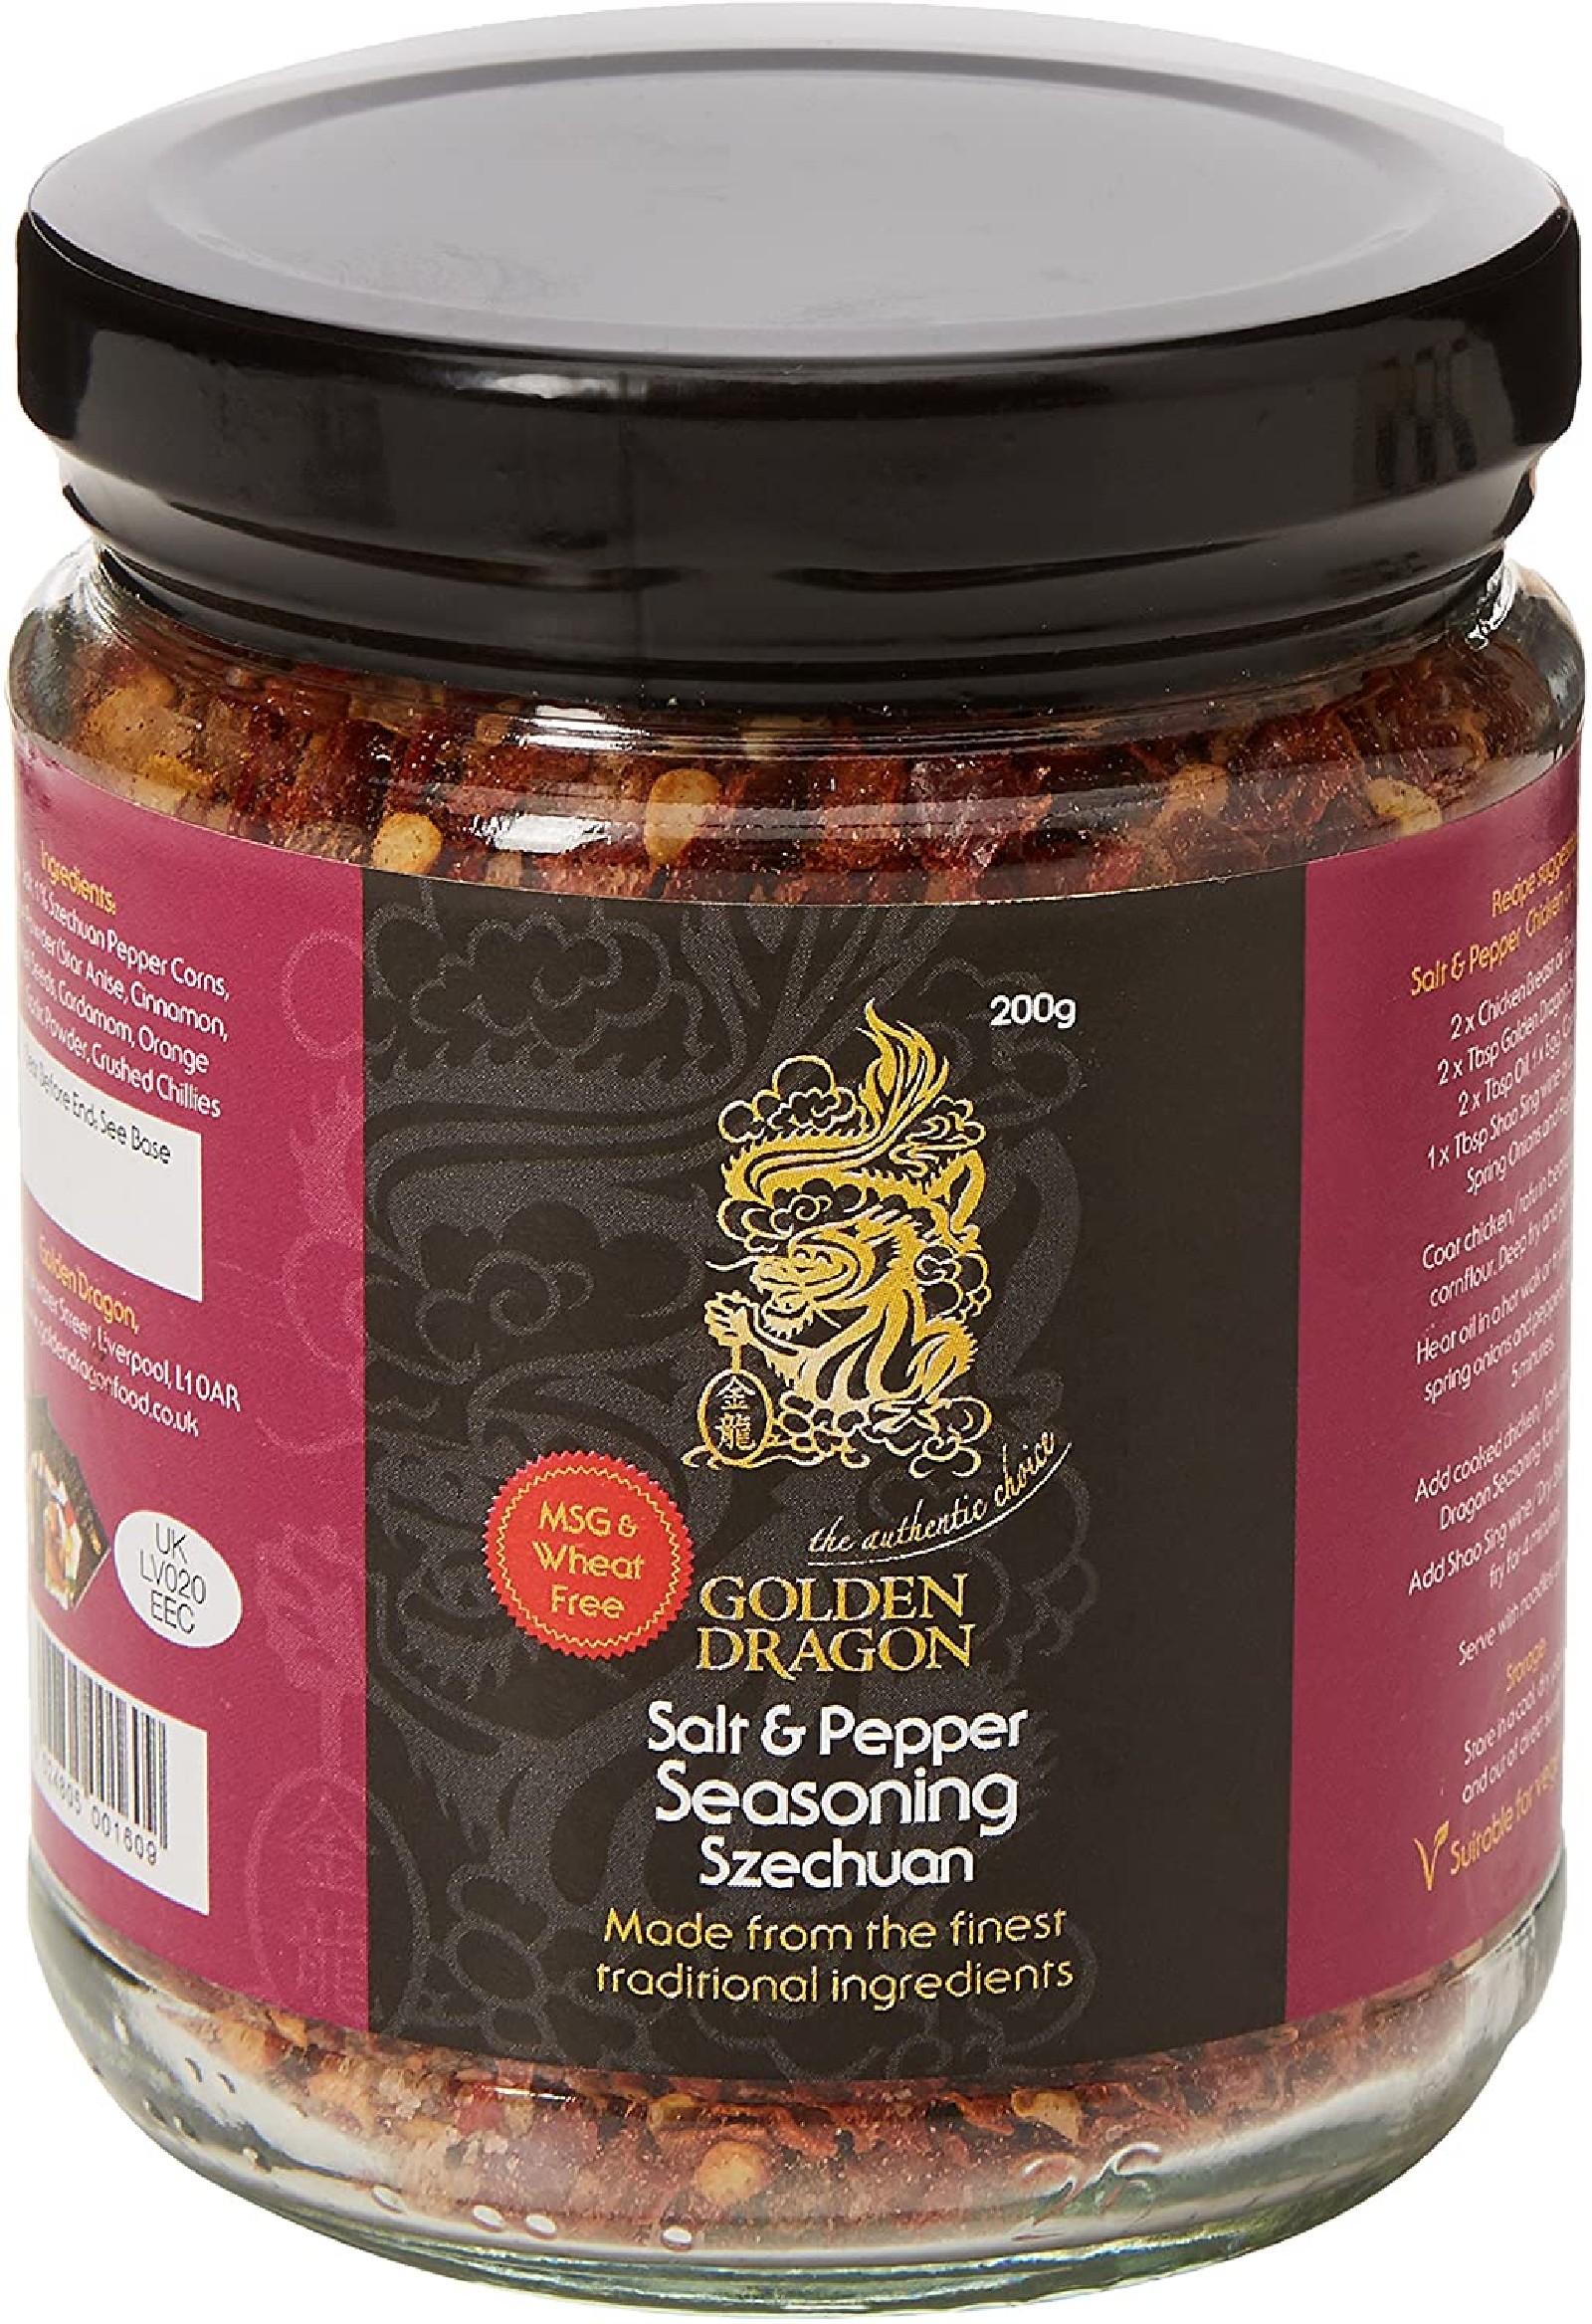 Golden Dragon Salt And Pepper Seasoning, Sezchuan, 200g - Chinese